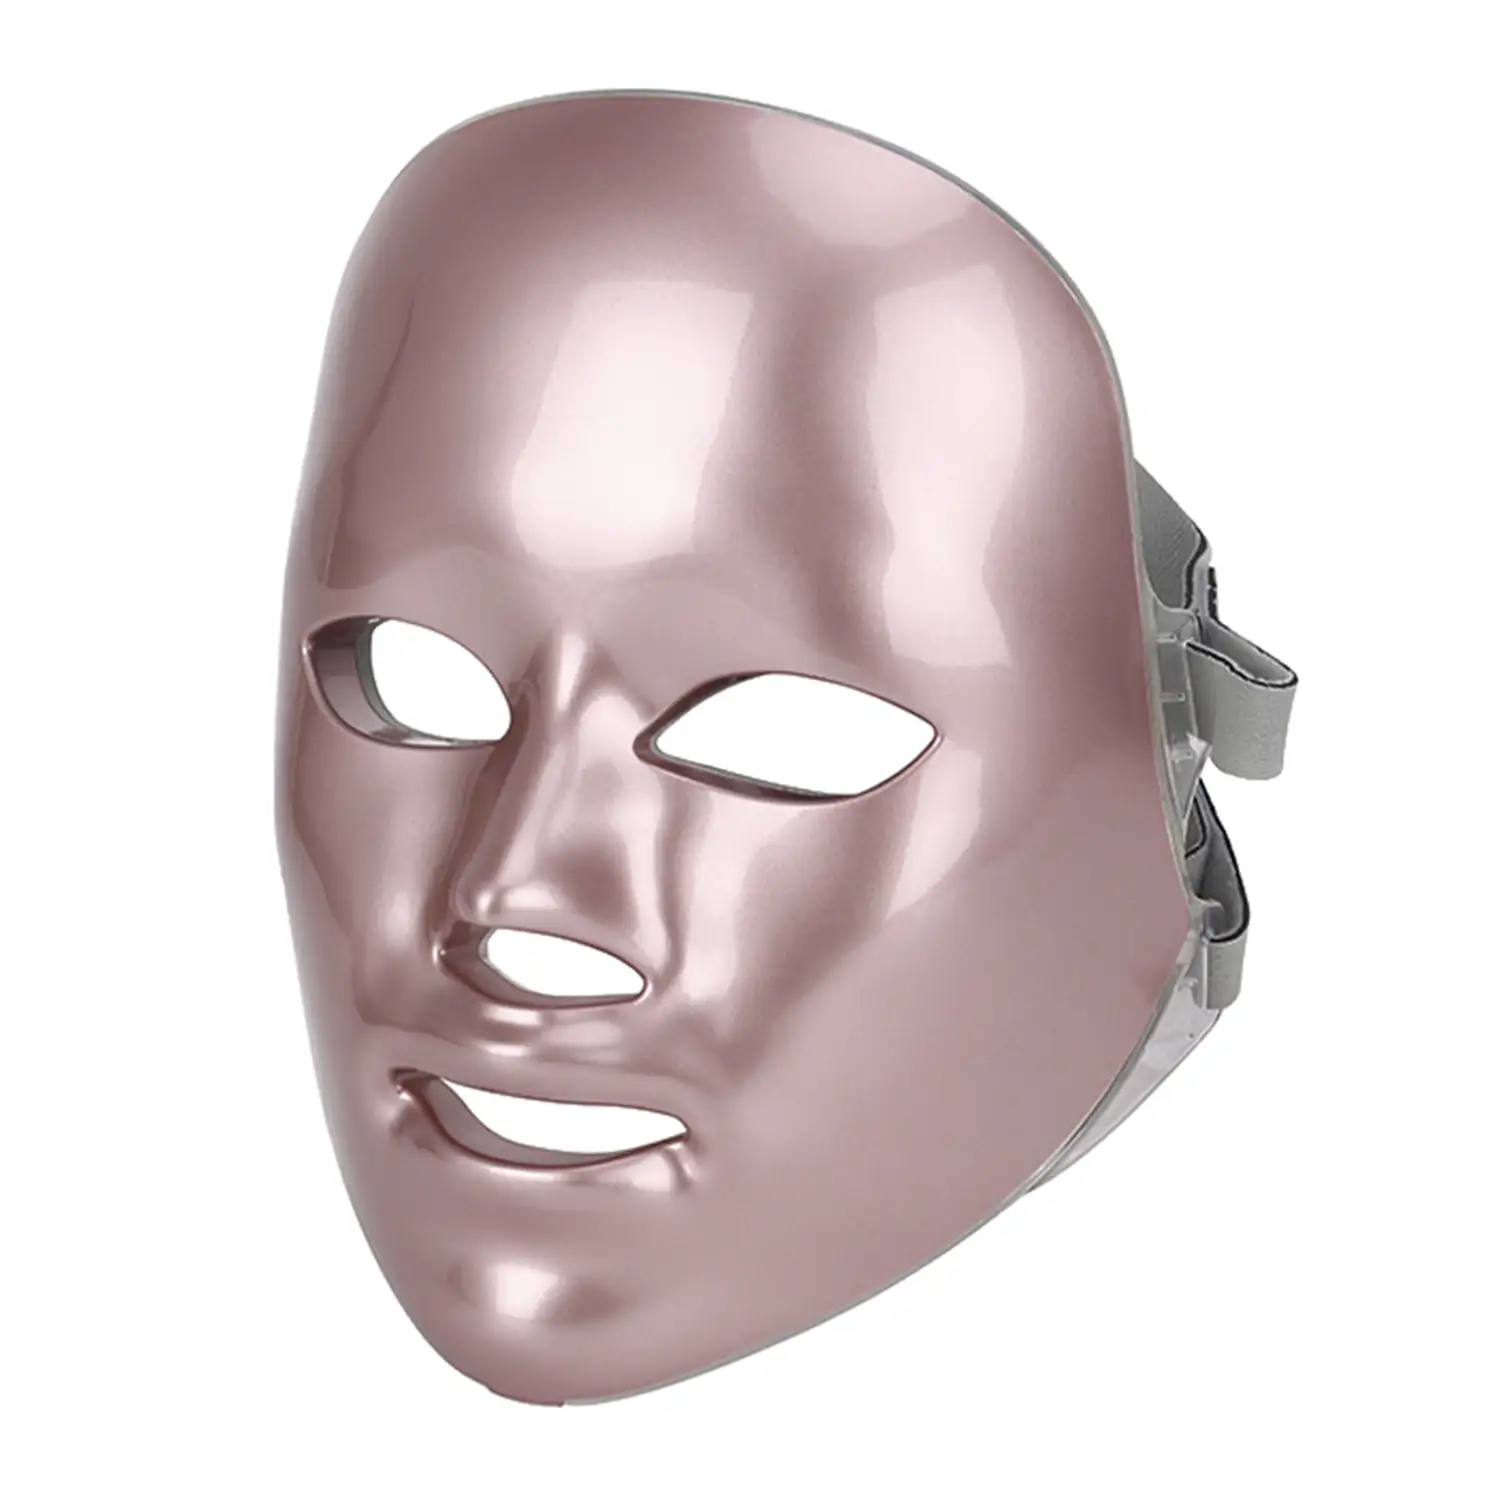 Máscara LED fotónica de siete colores. Cuidado facial, anti edad, rejuvenecimiento de la piel.